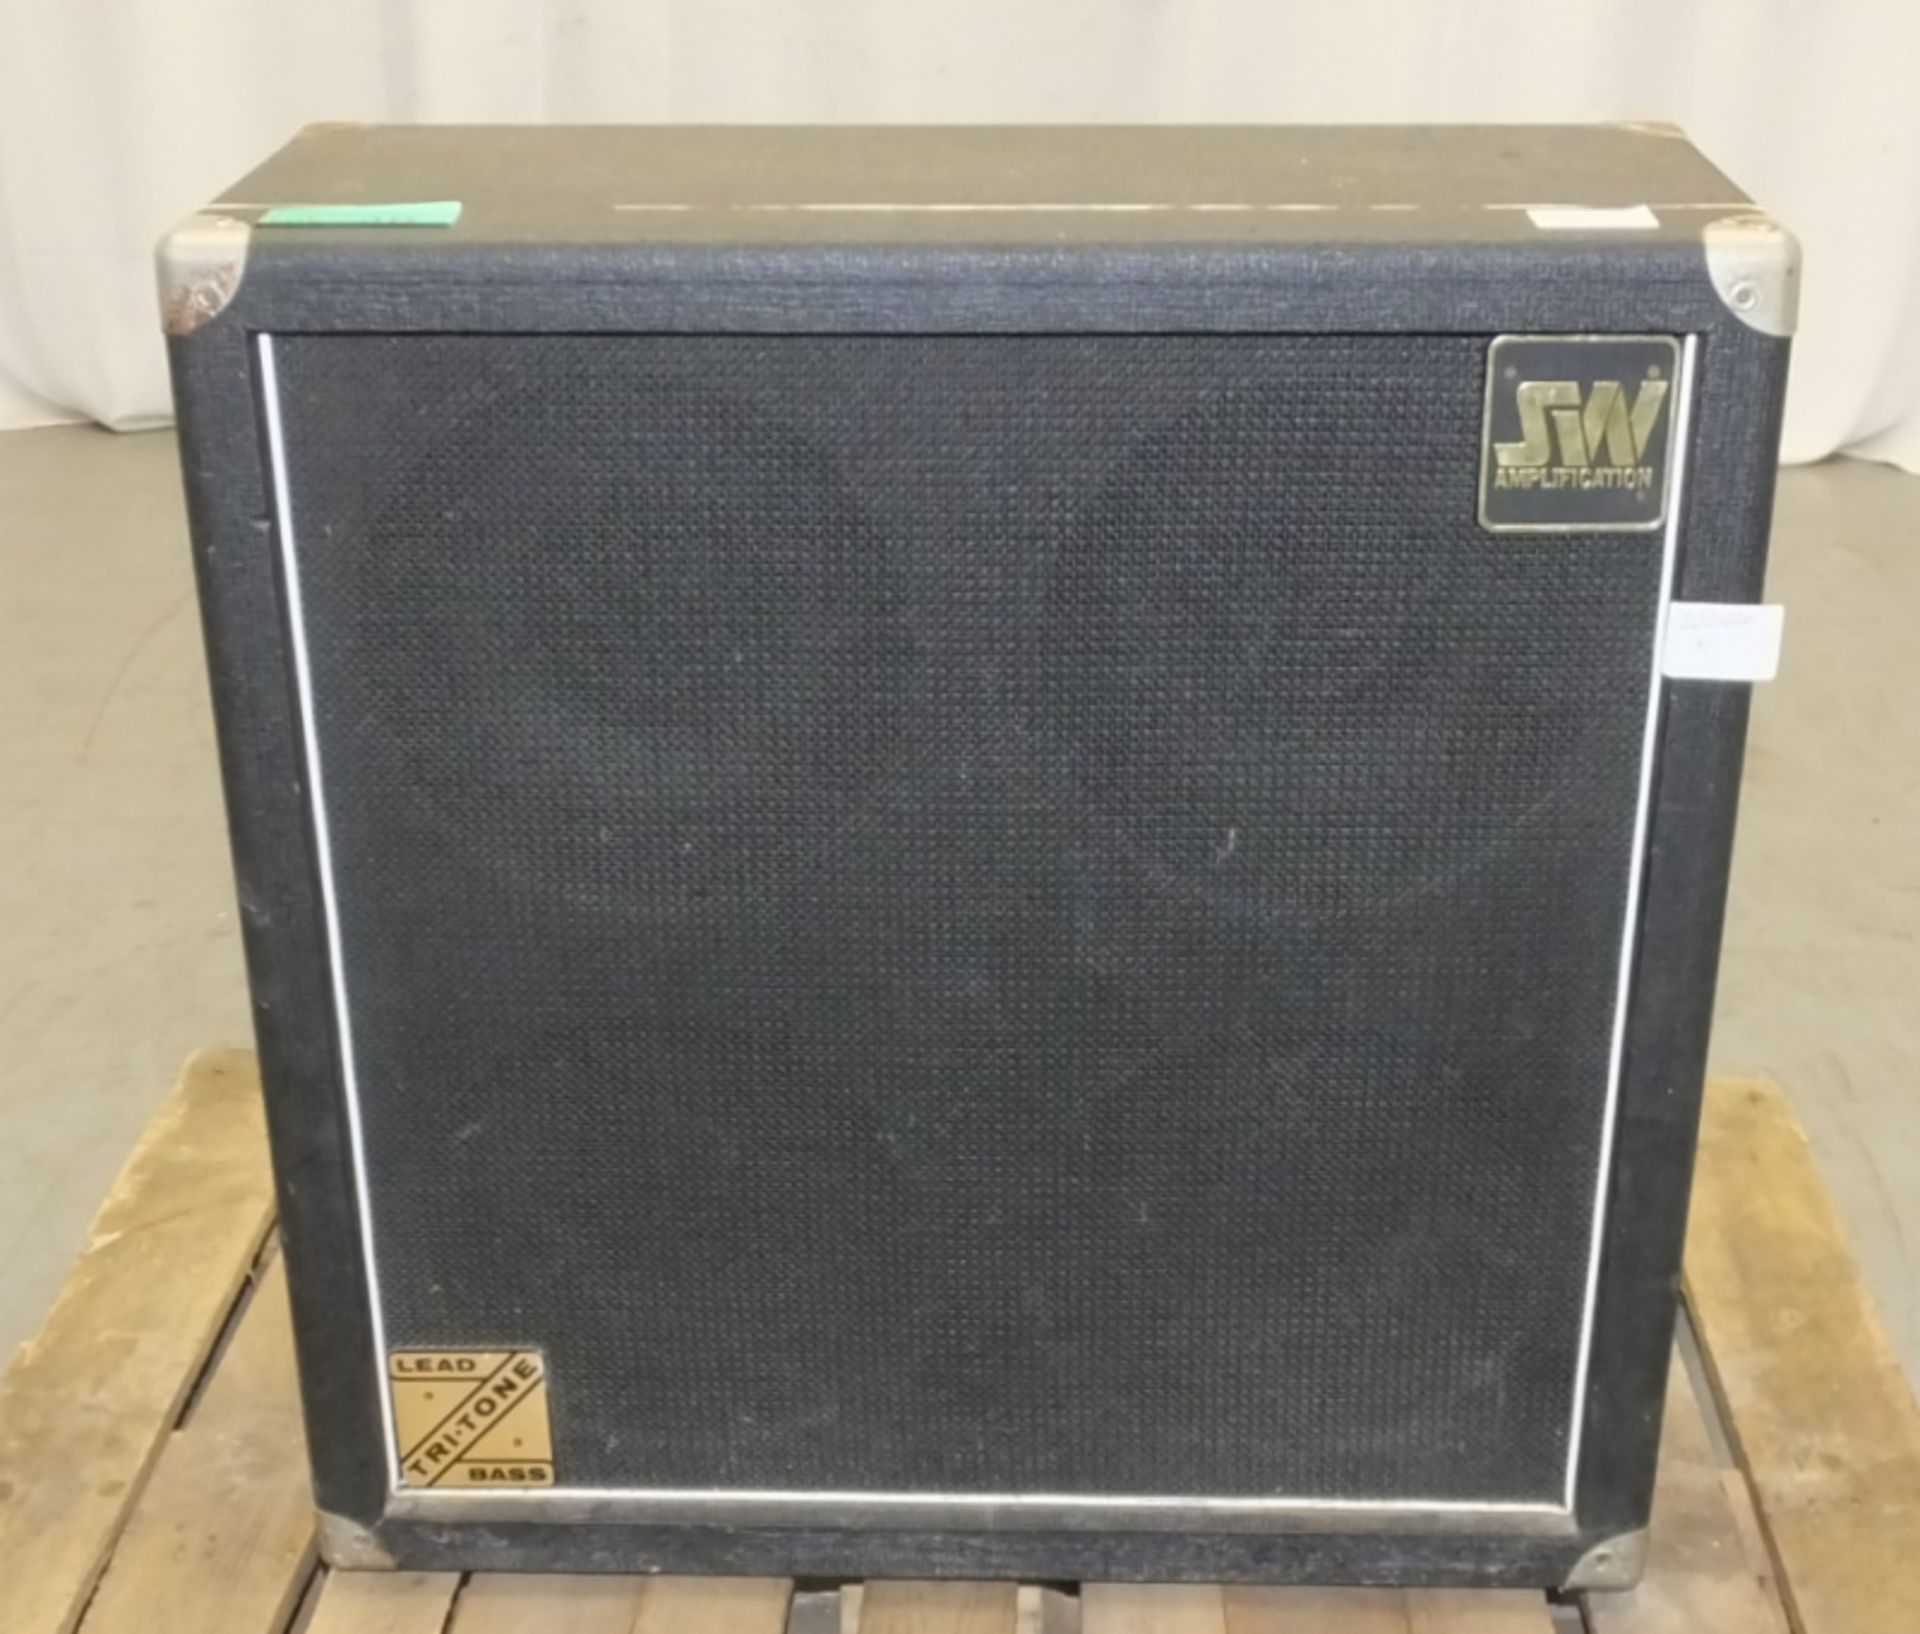 SW Amplification Tritone Amplifier - no power lead